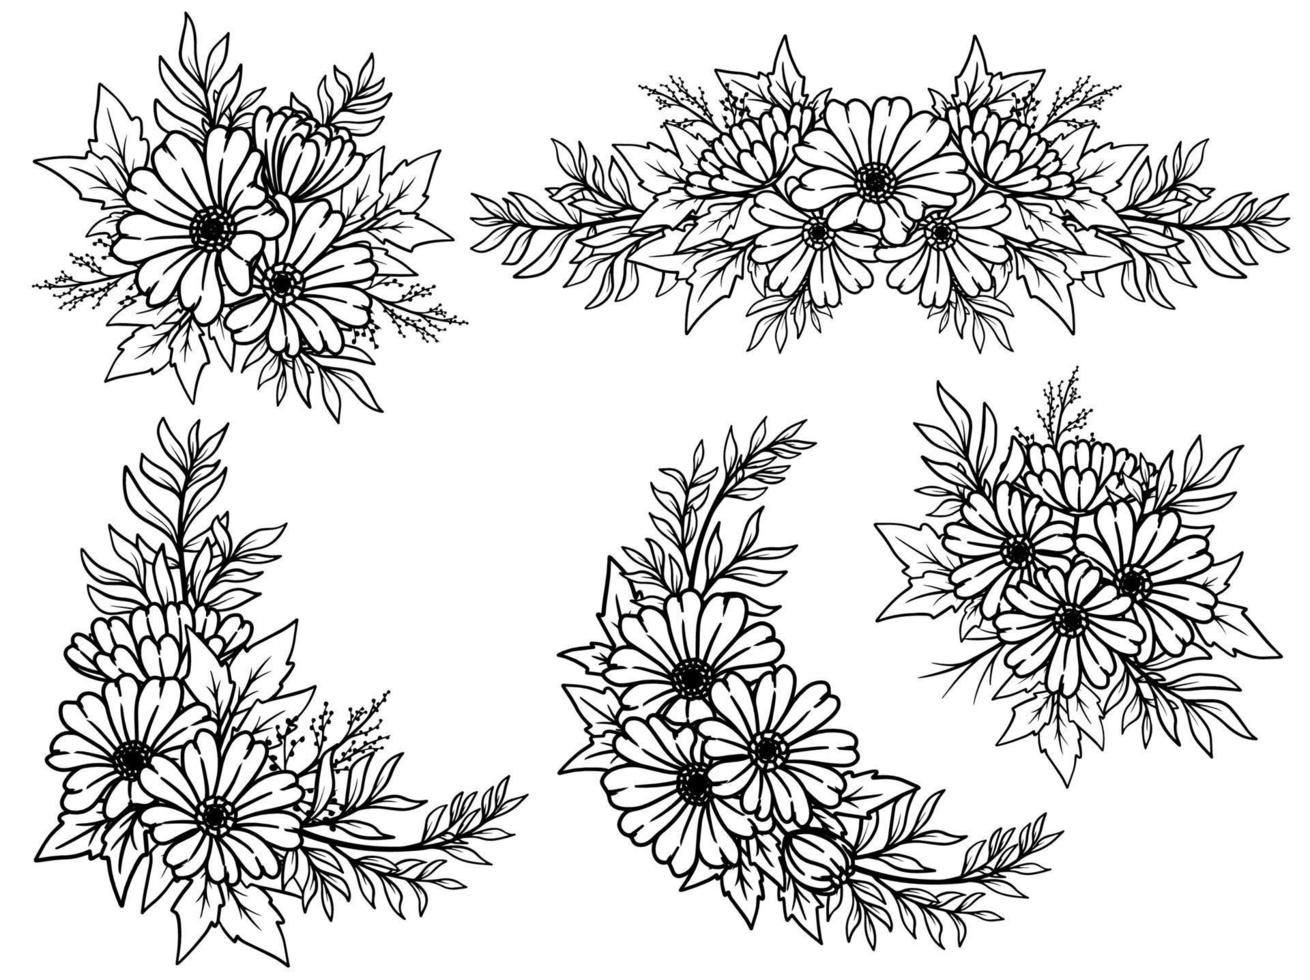 Blumenarrangement mit handgezeichneten Strichzeichnungen vektor